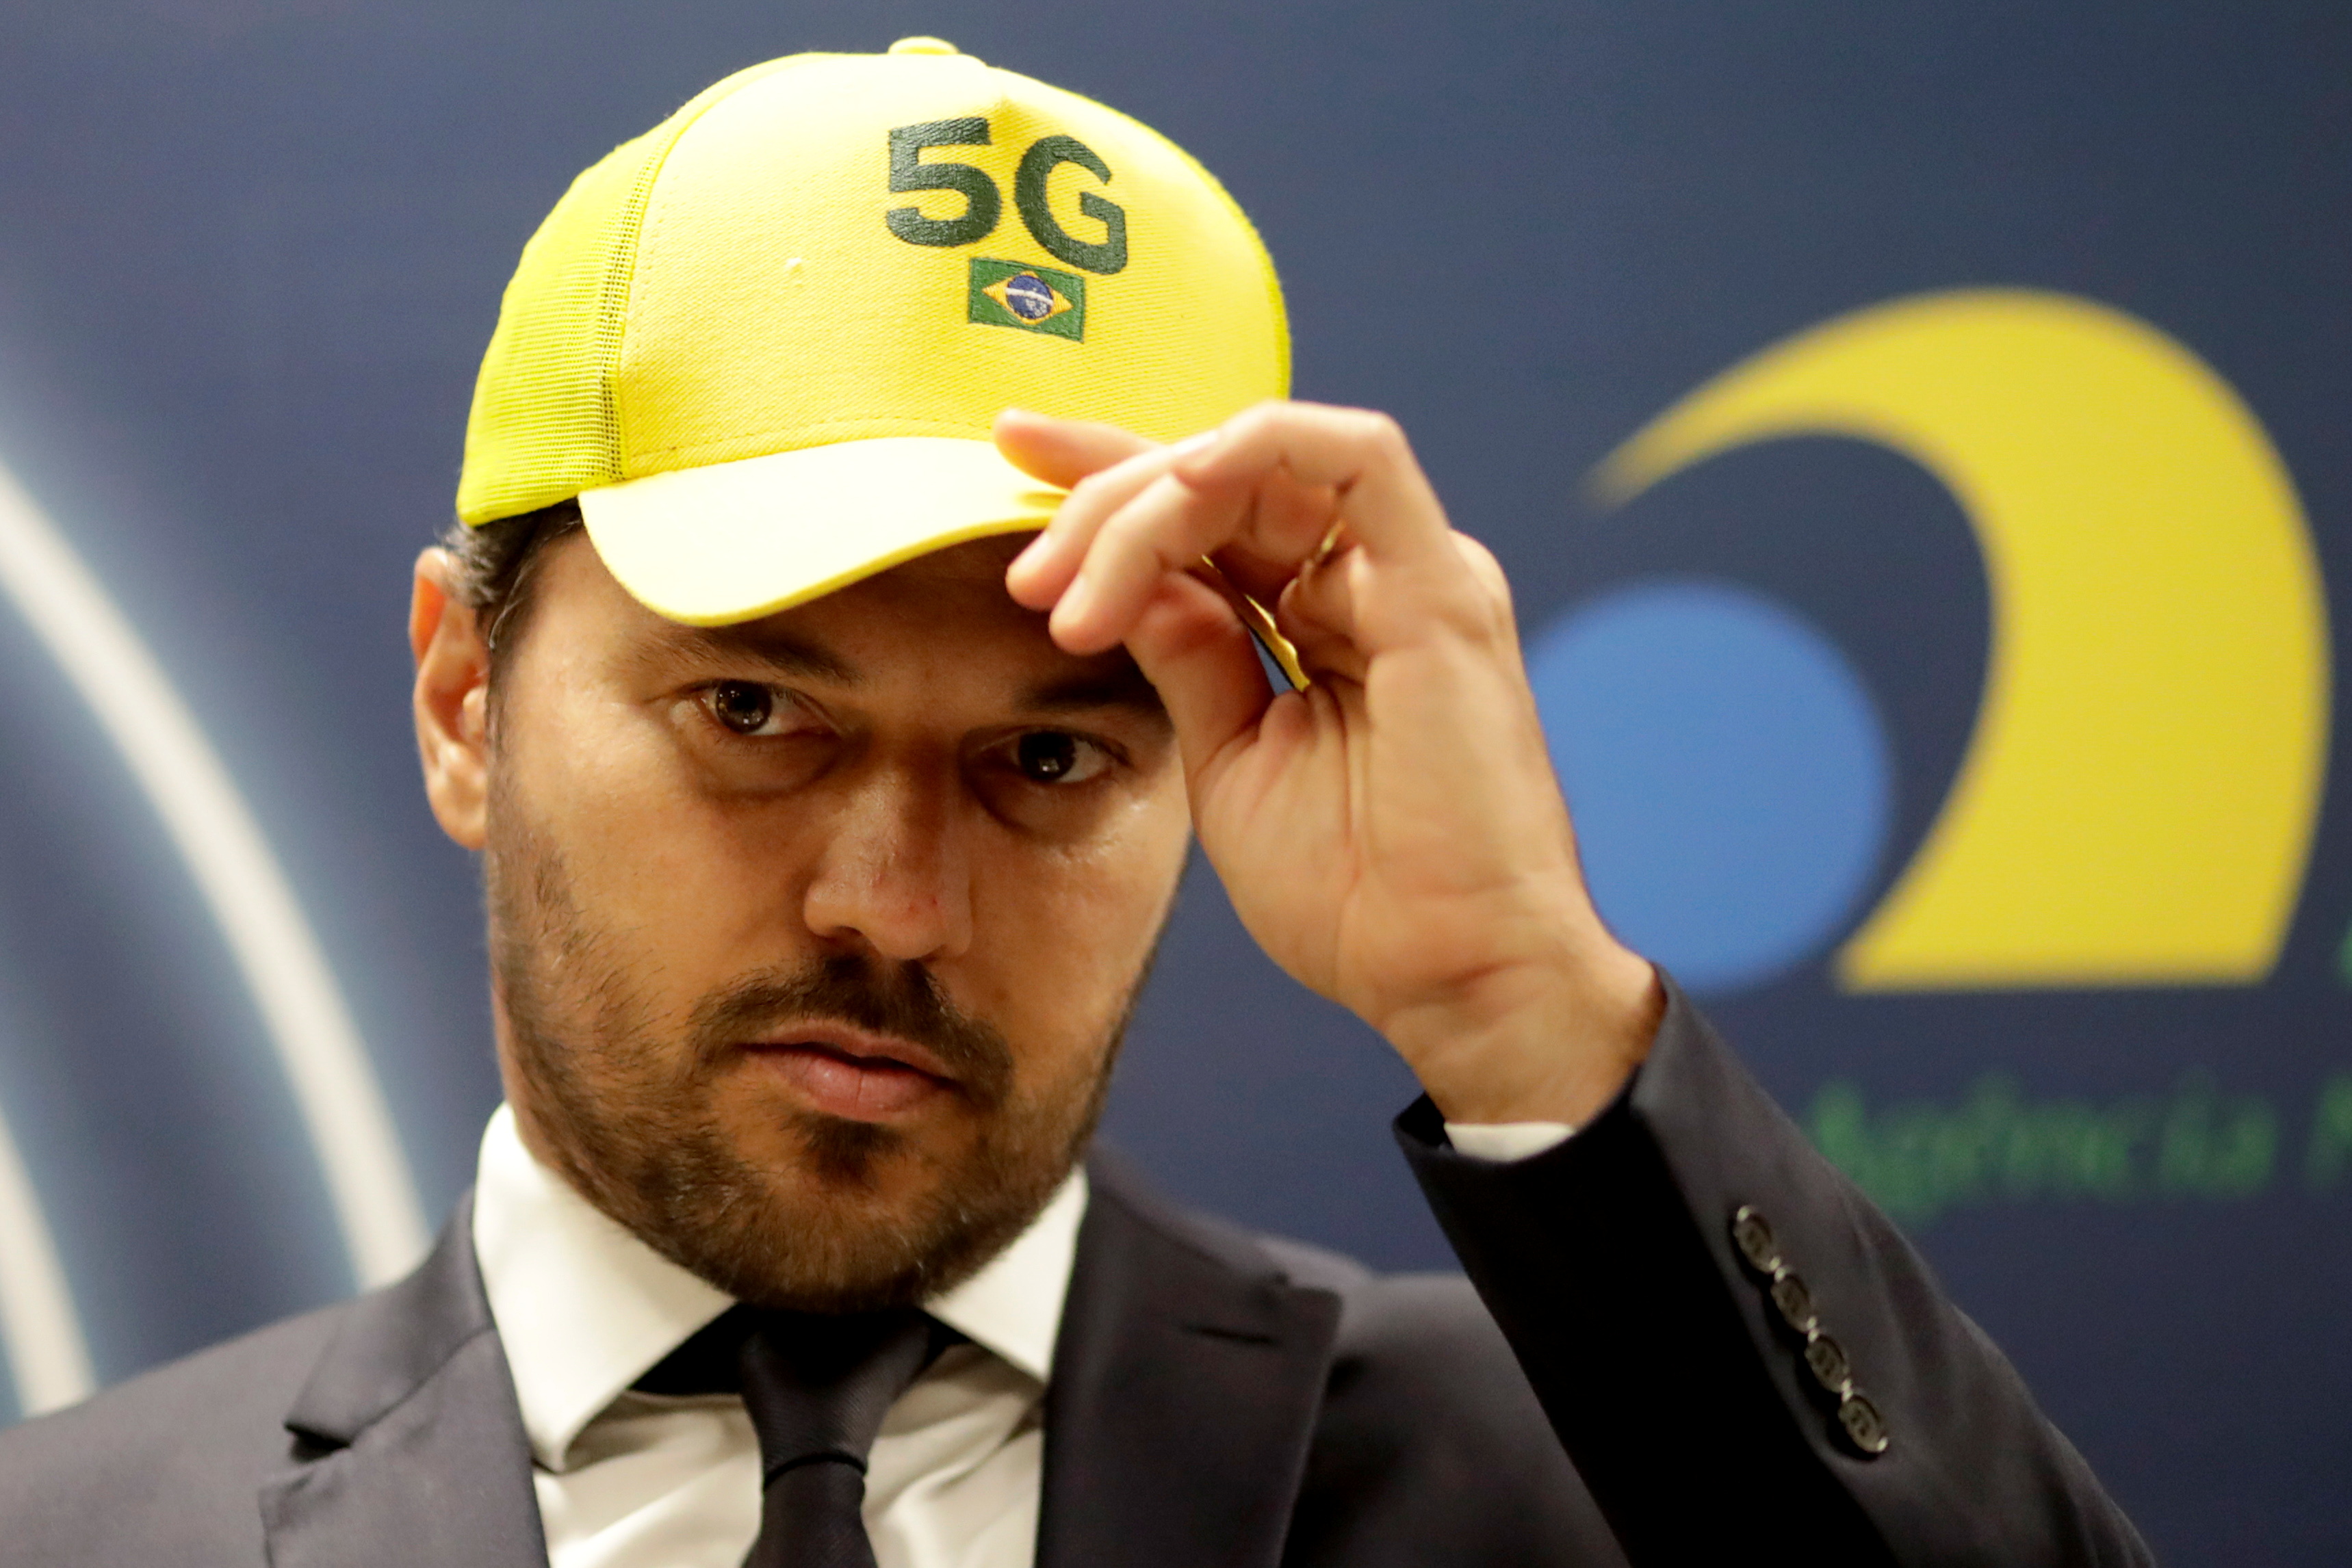 Brazil holds long-awaited 5G spectrum auction in Brasilia